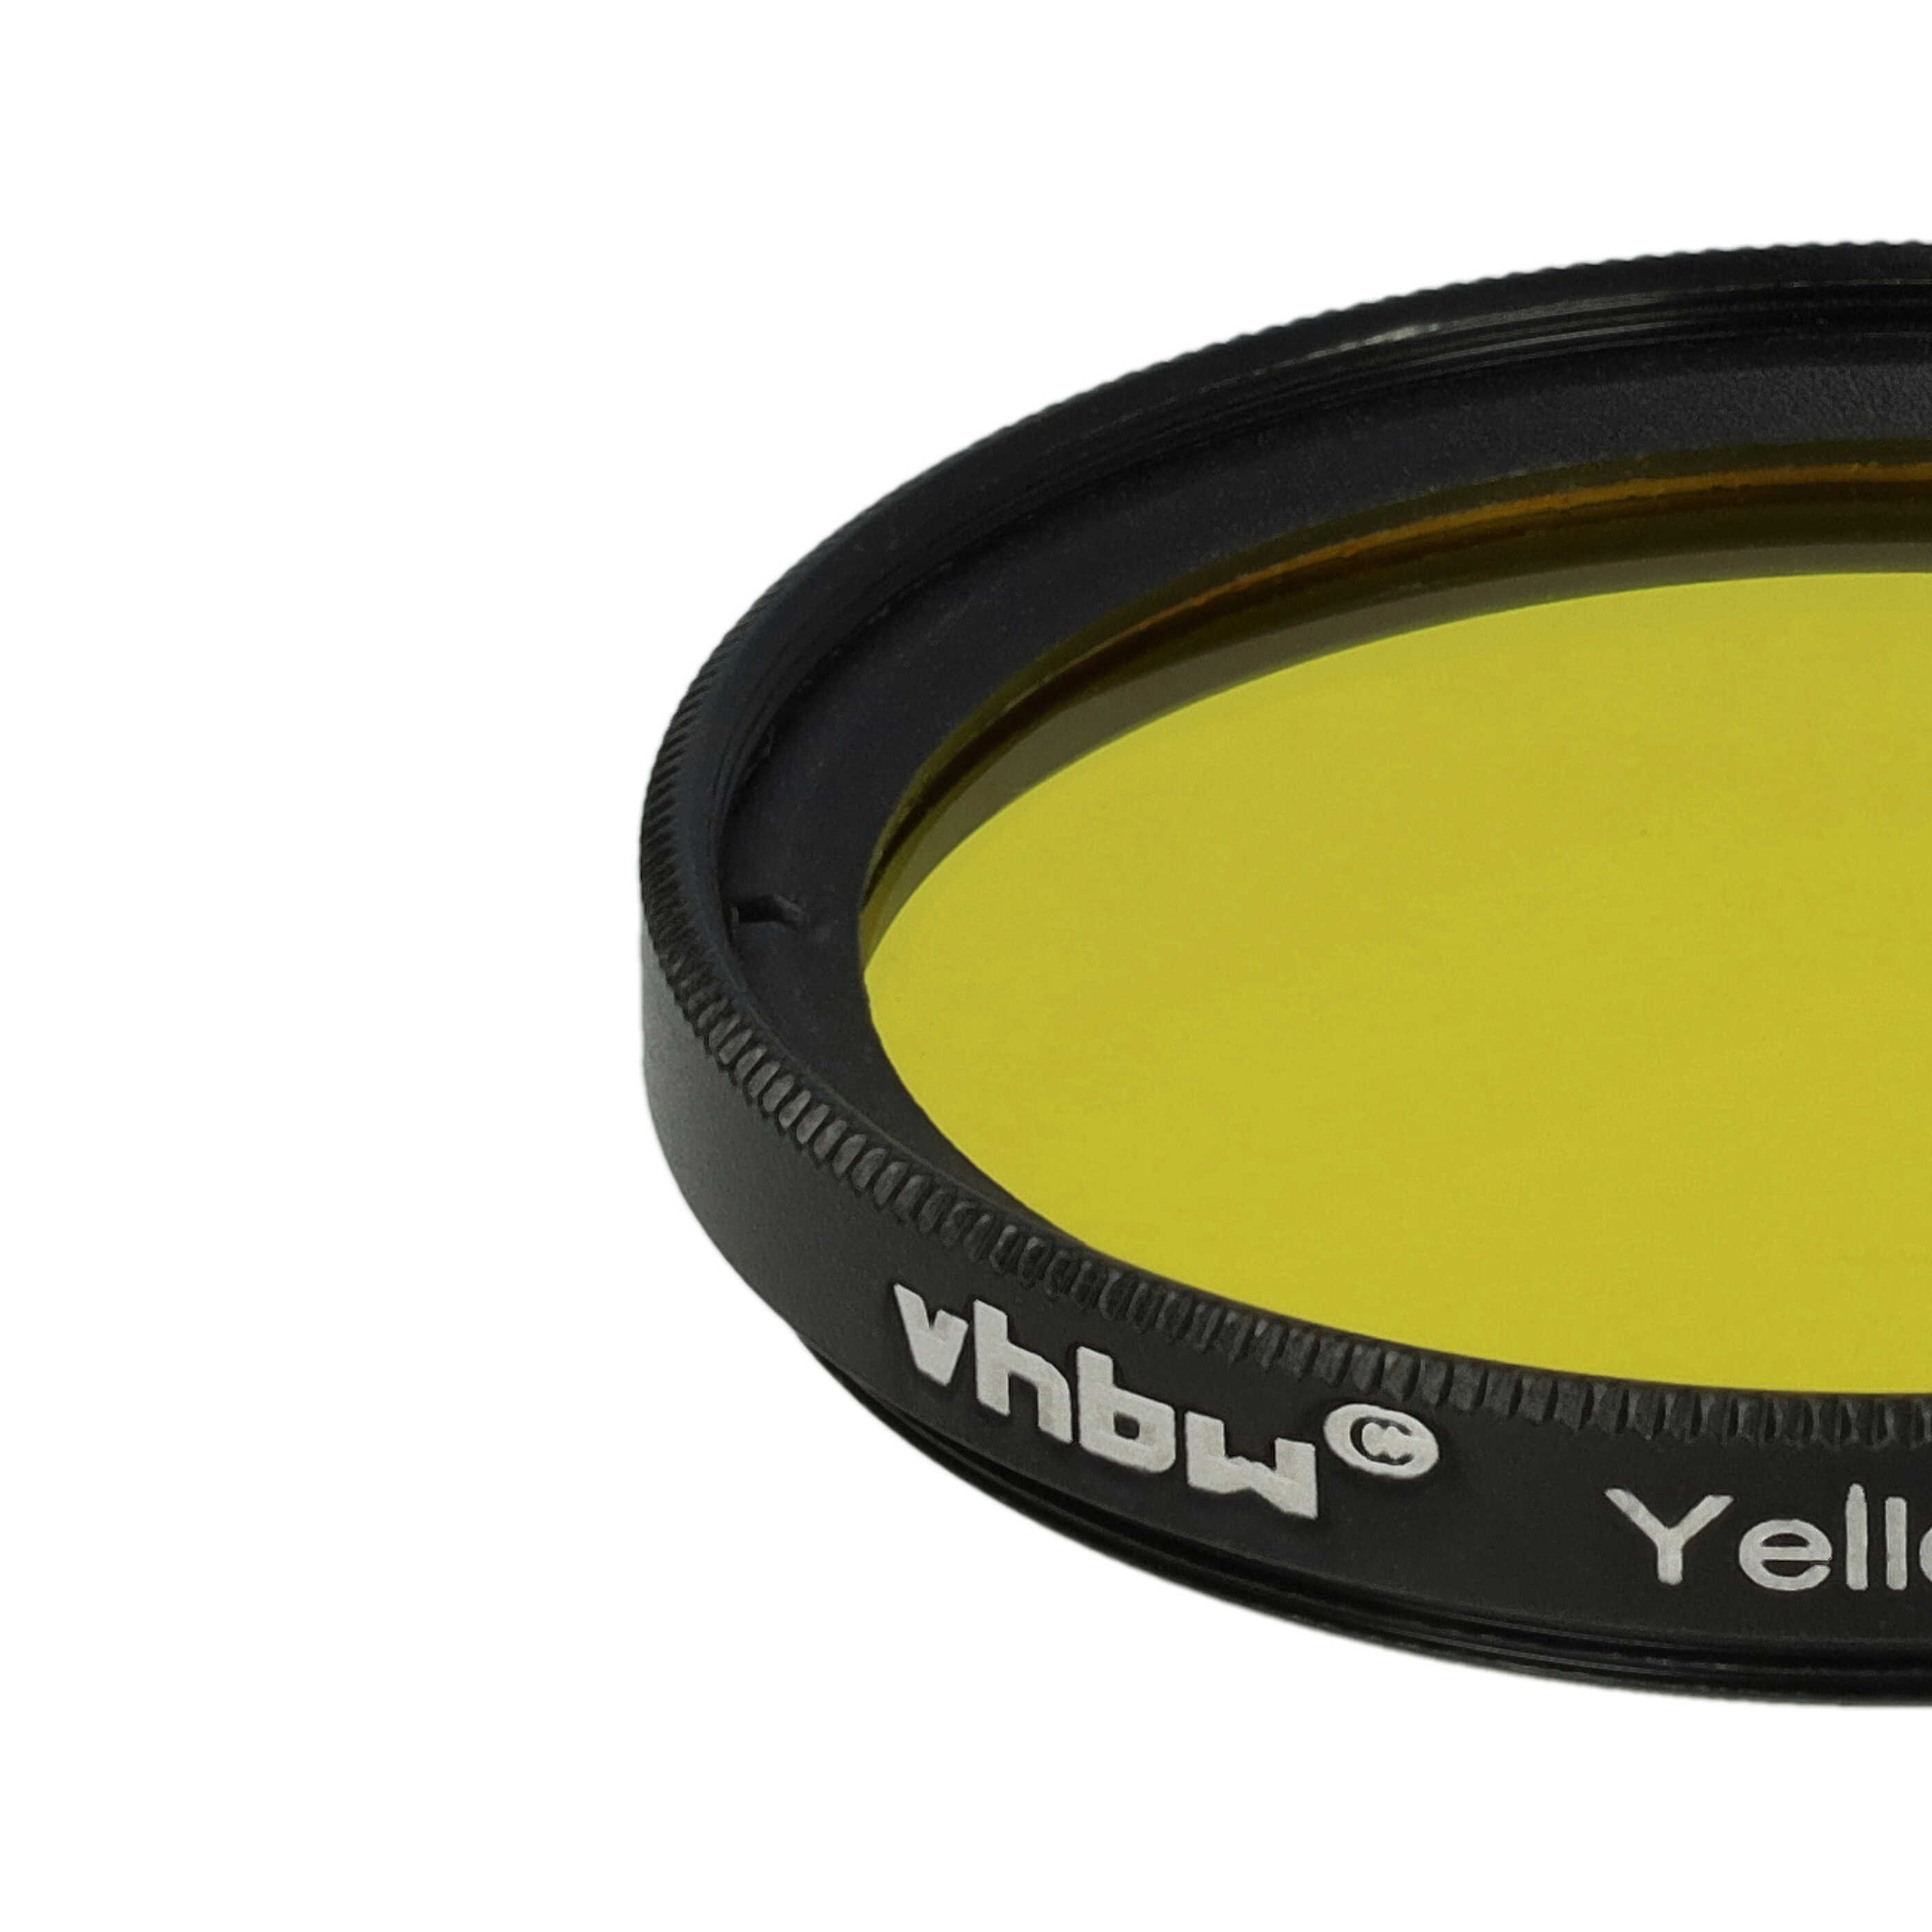 Filtre de couleur jaune pour objectifs d'appareils photo de 40,5 mm - Filtre jaune